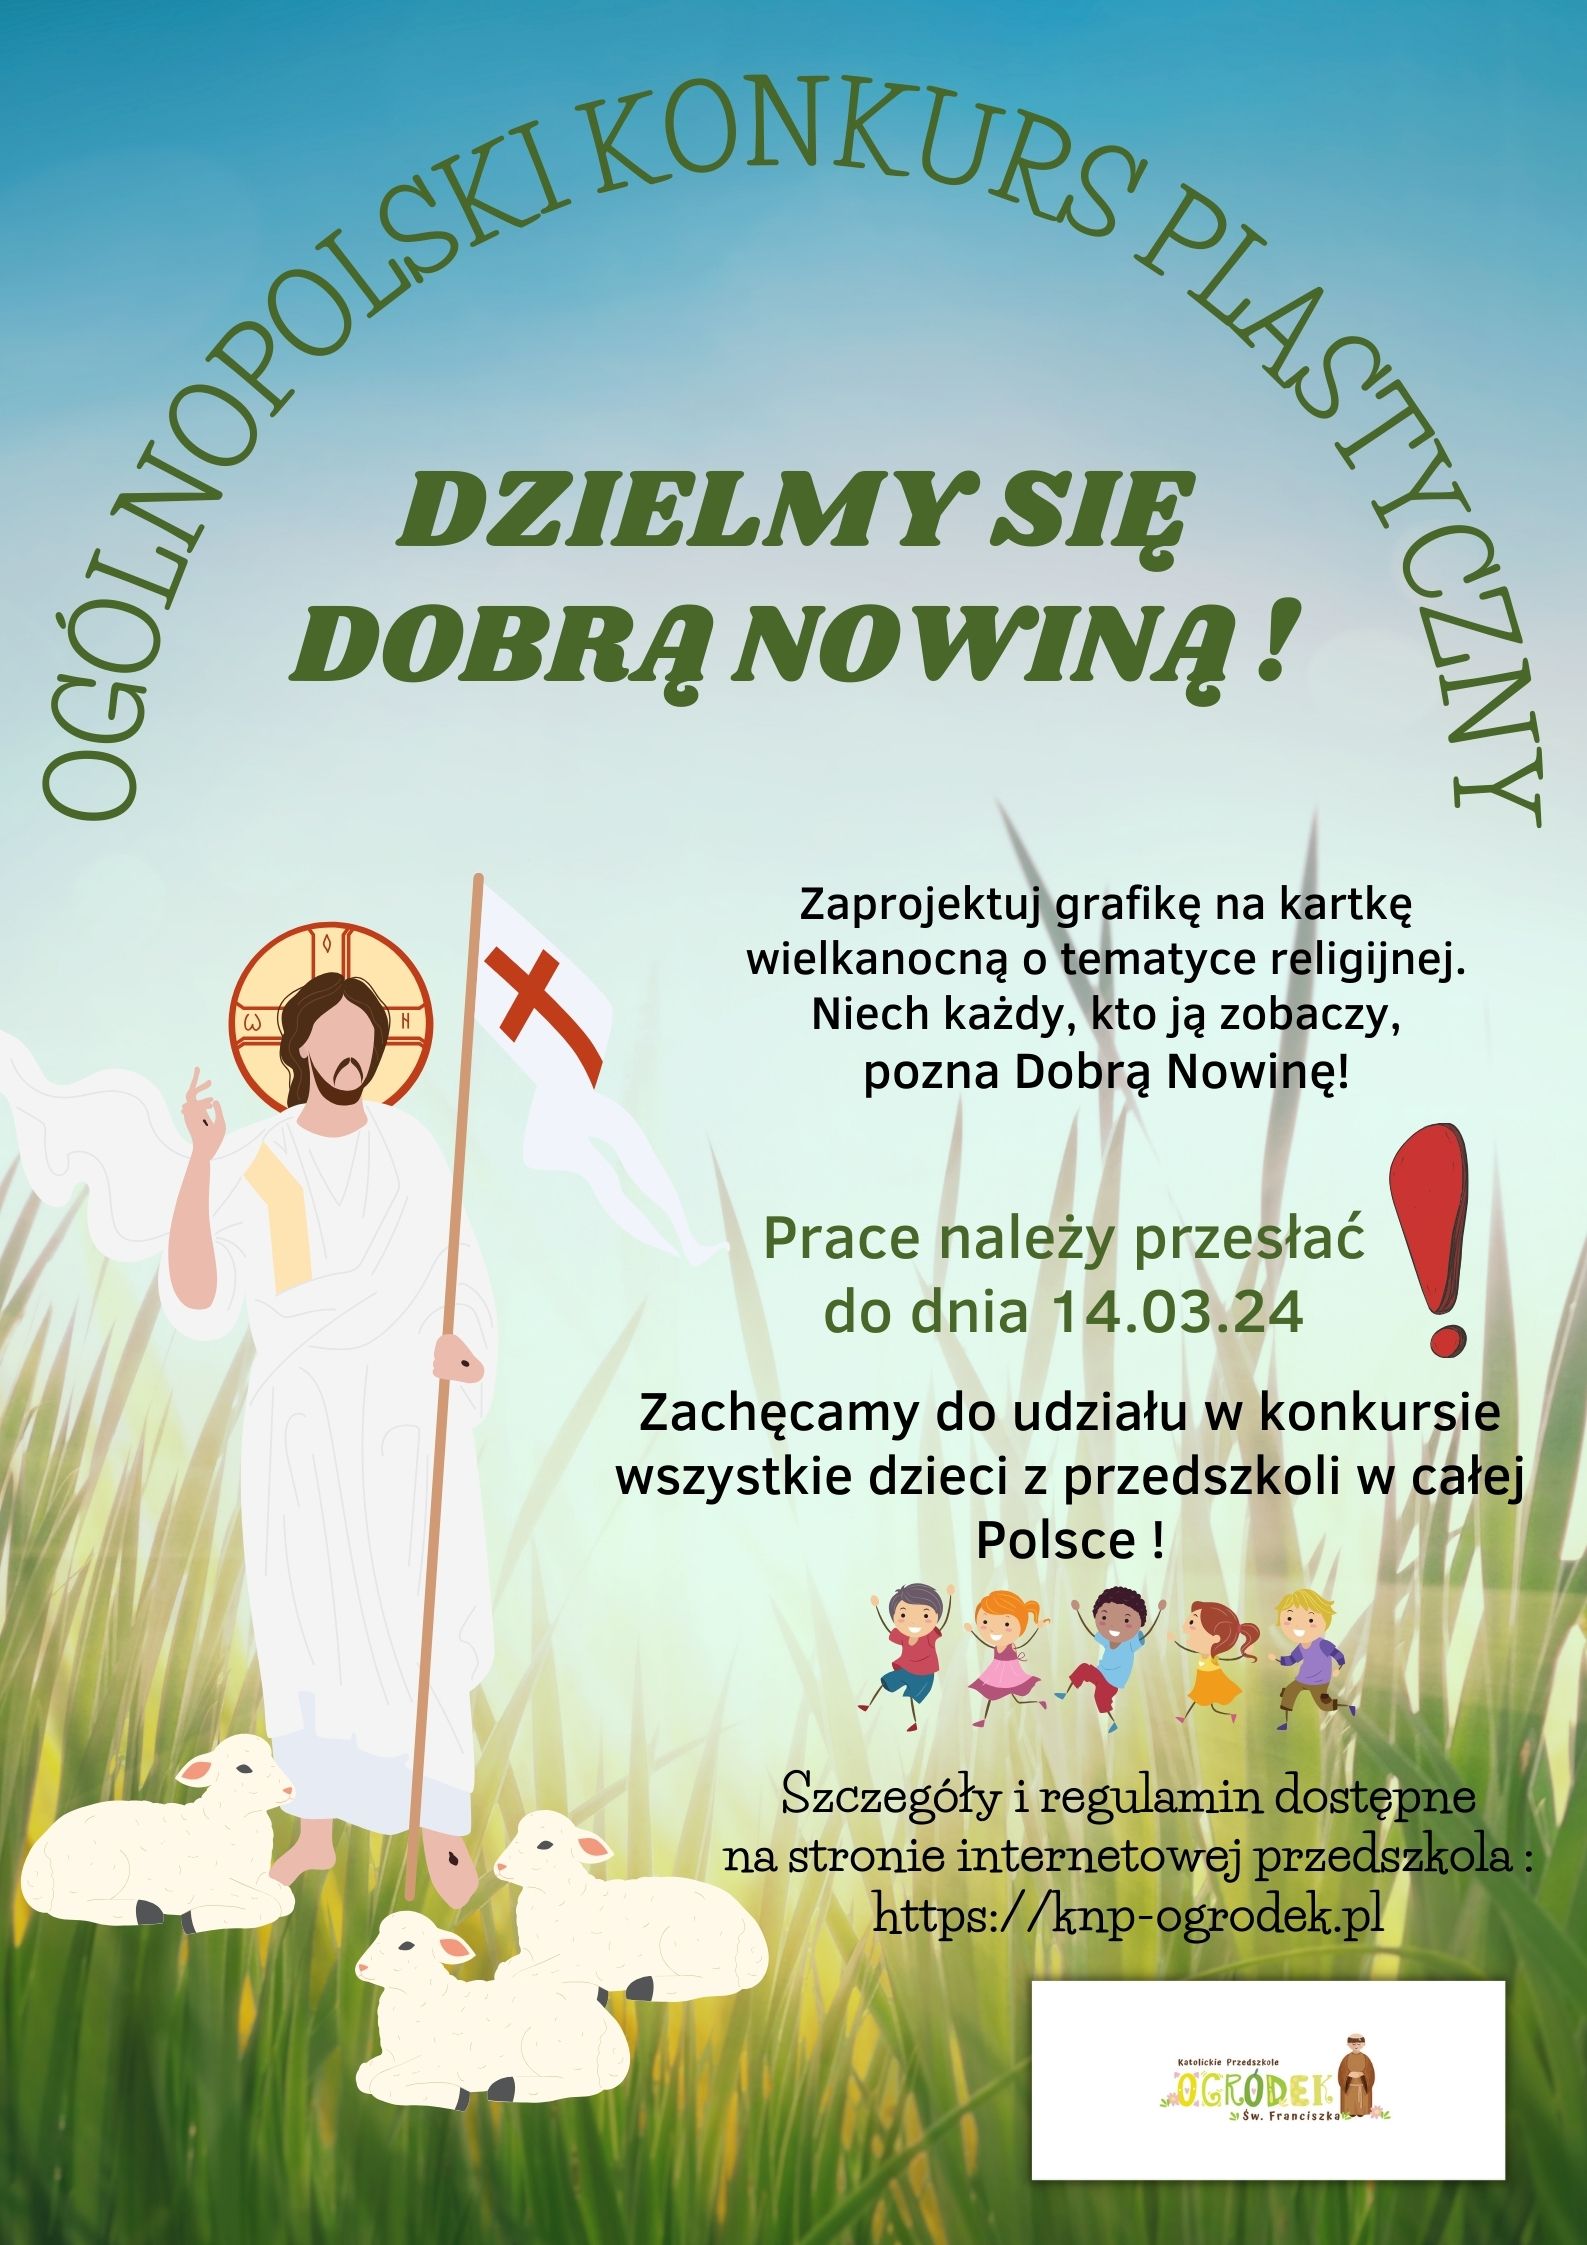 „DZIELMY SIĘ DOBRĄ NOWINĄ!” - konkurs ogólnopolski